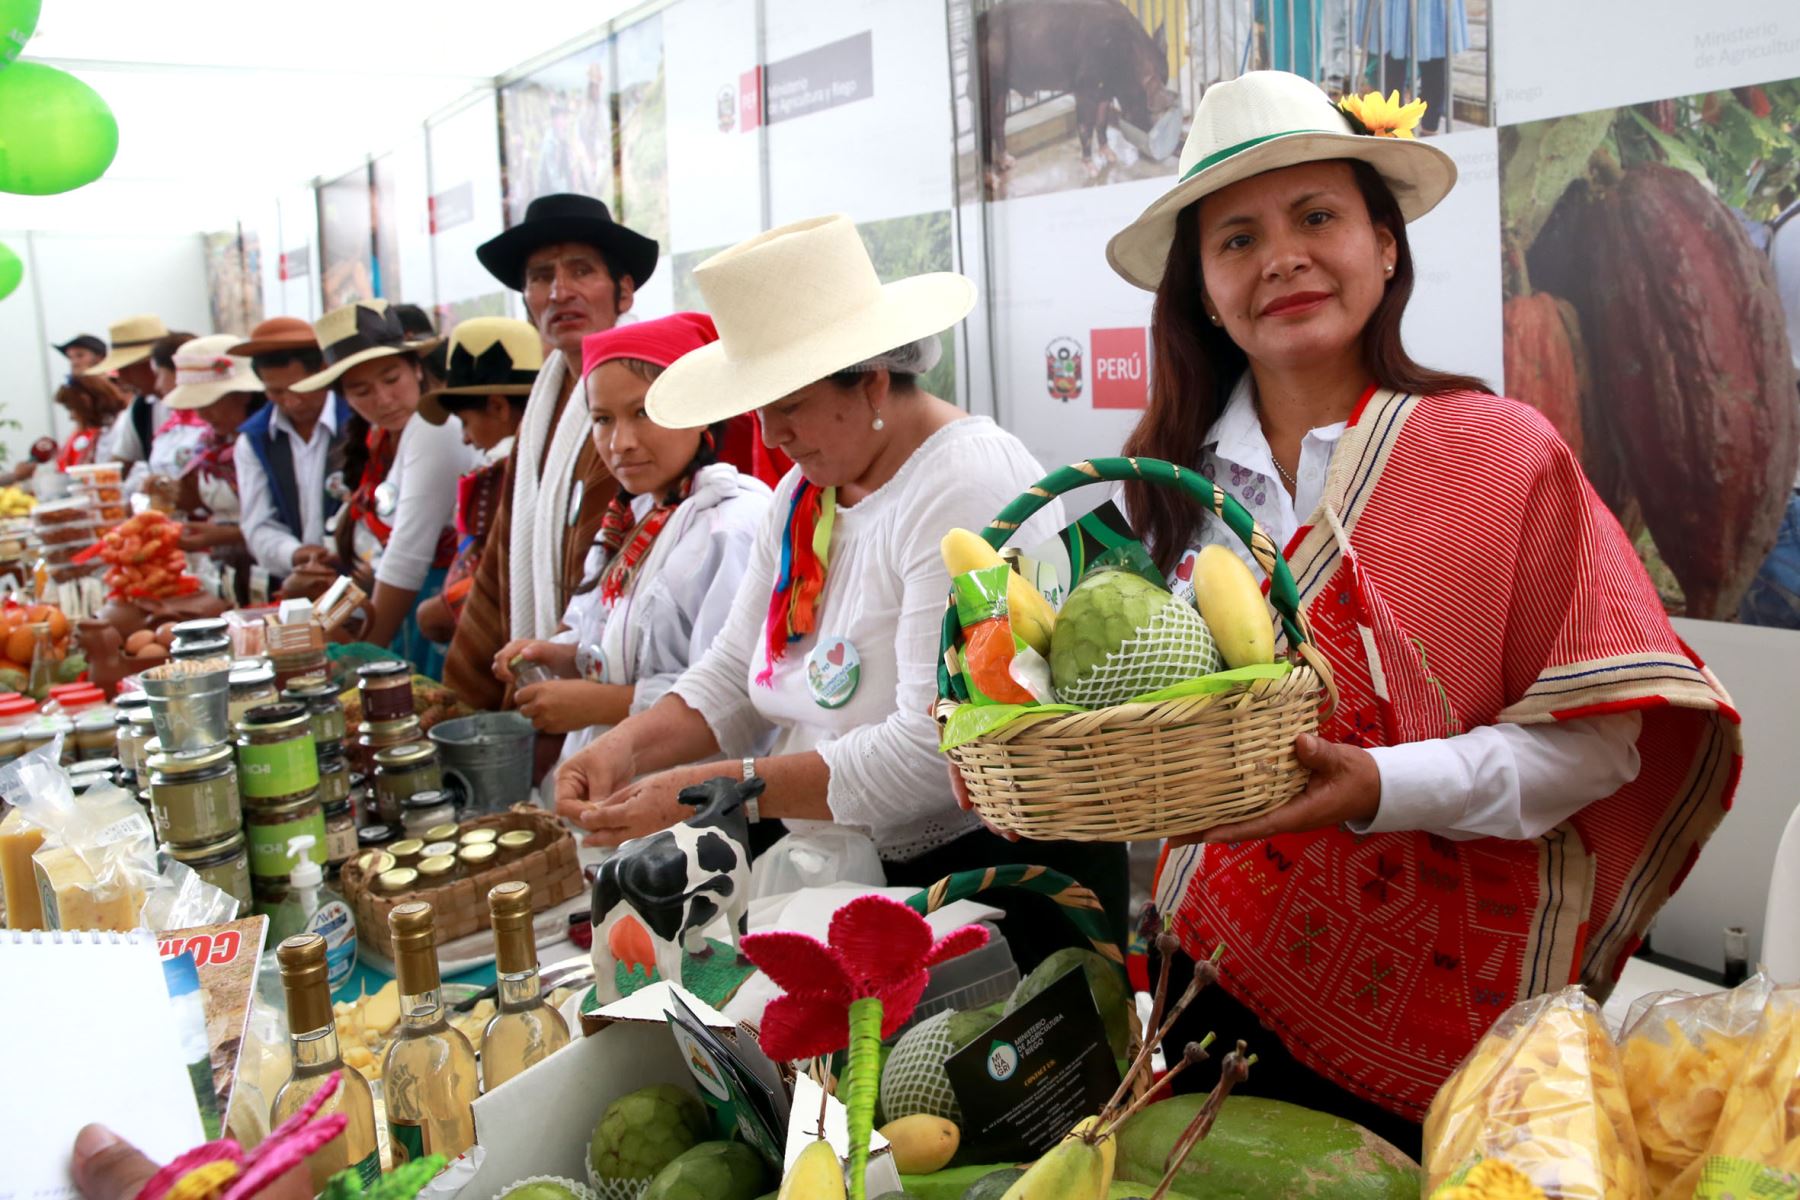 Muestra de la gran variedad de alimentos que el Perú produce. ANDINA/Dante Zegarra